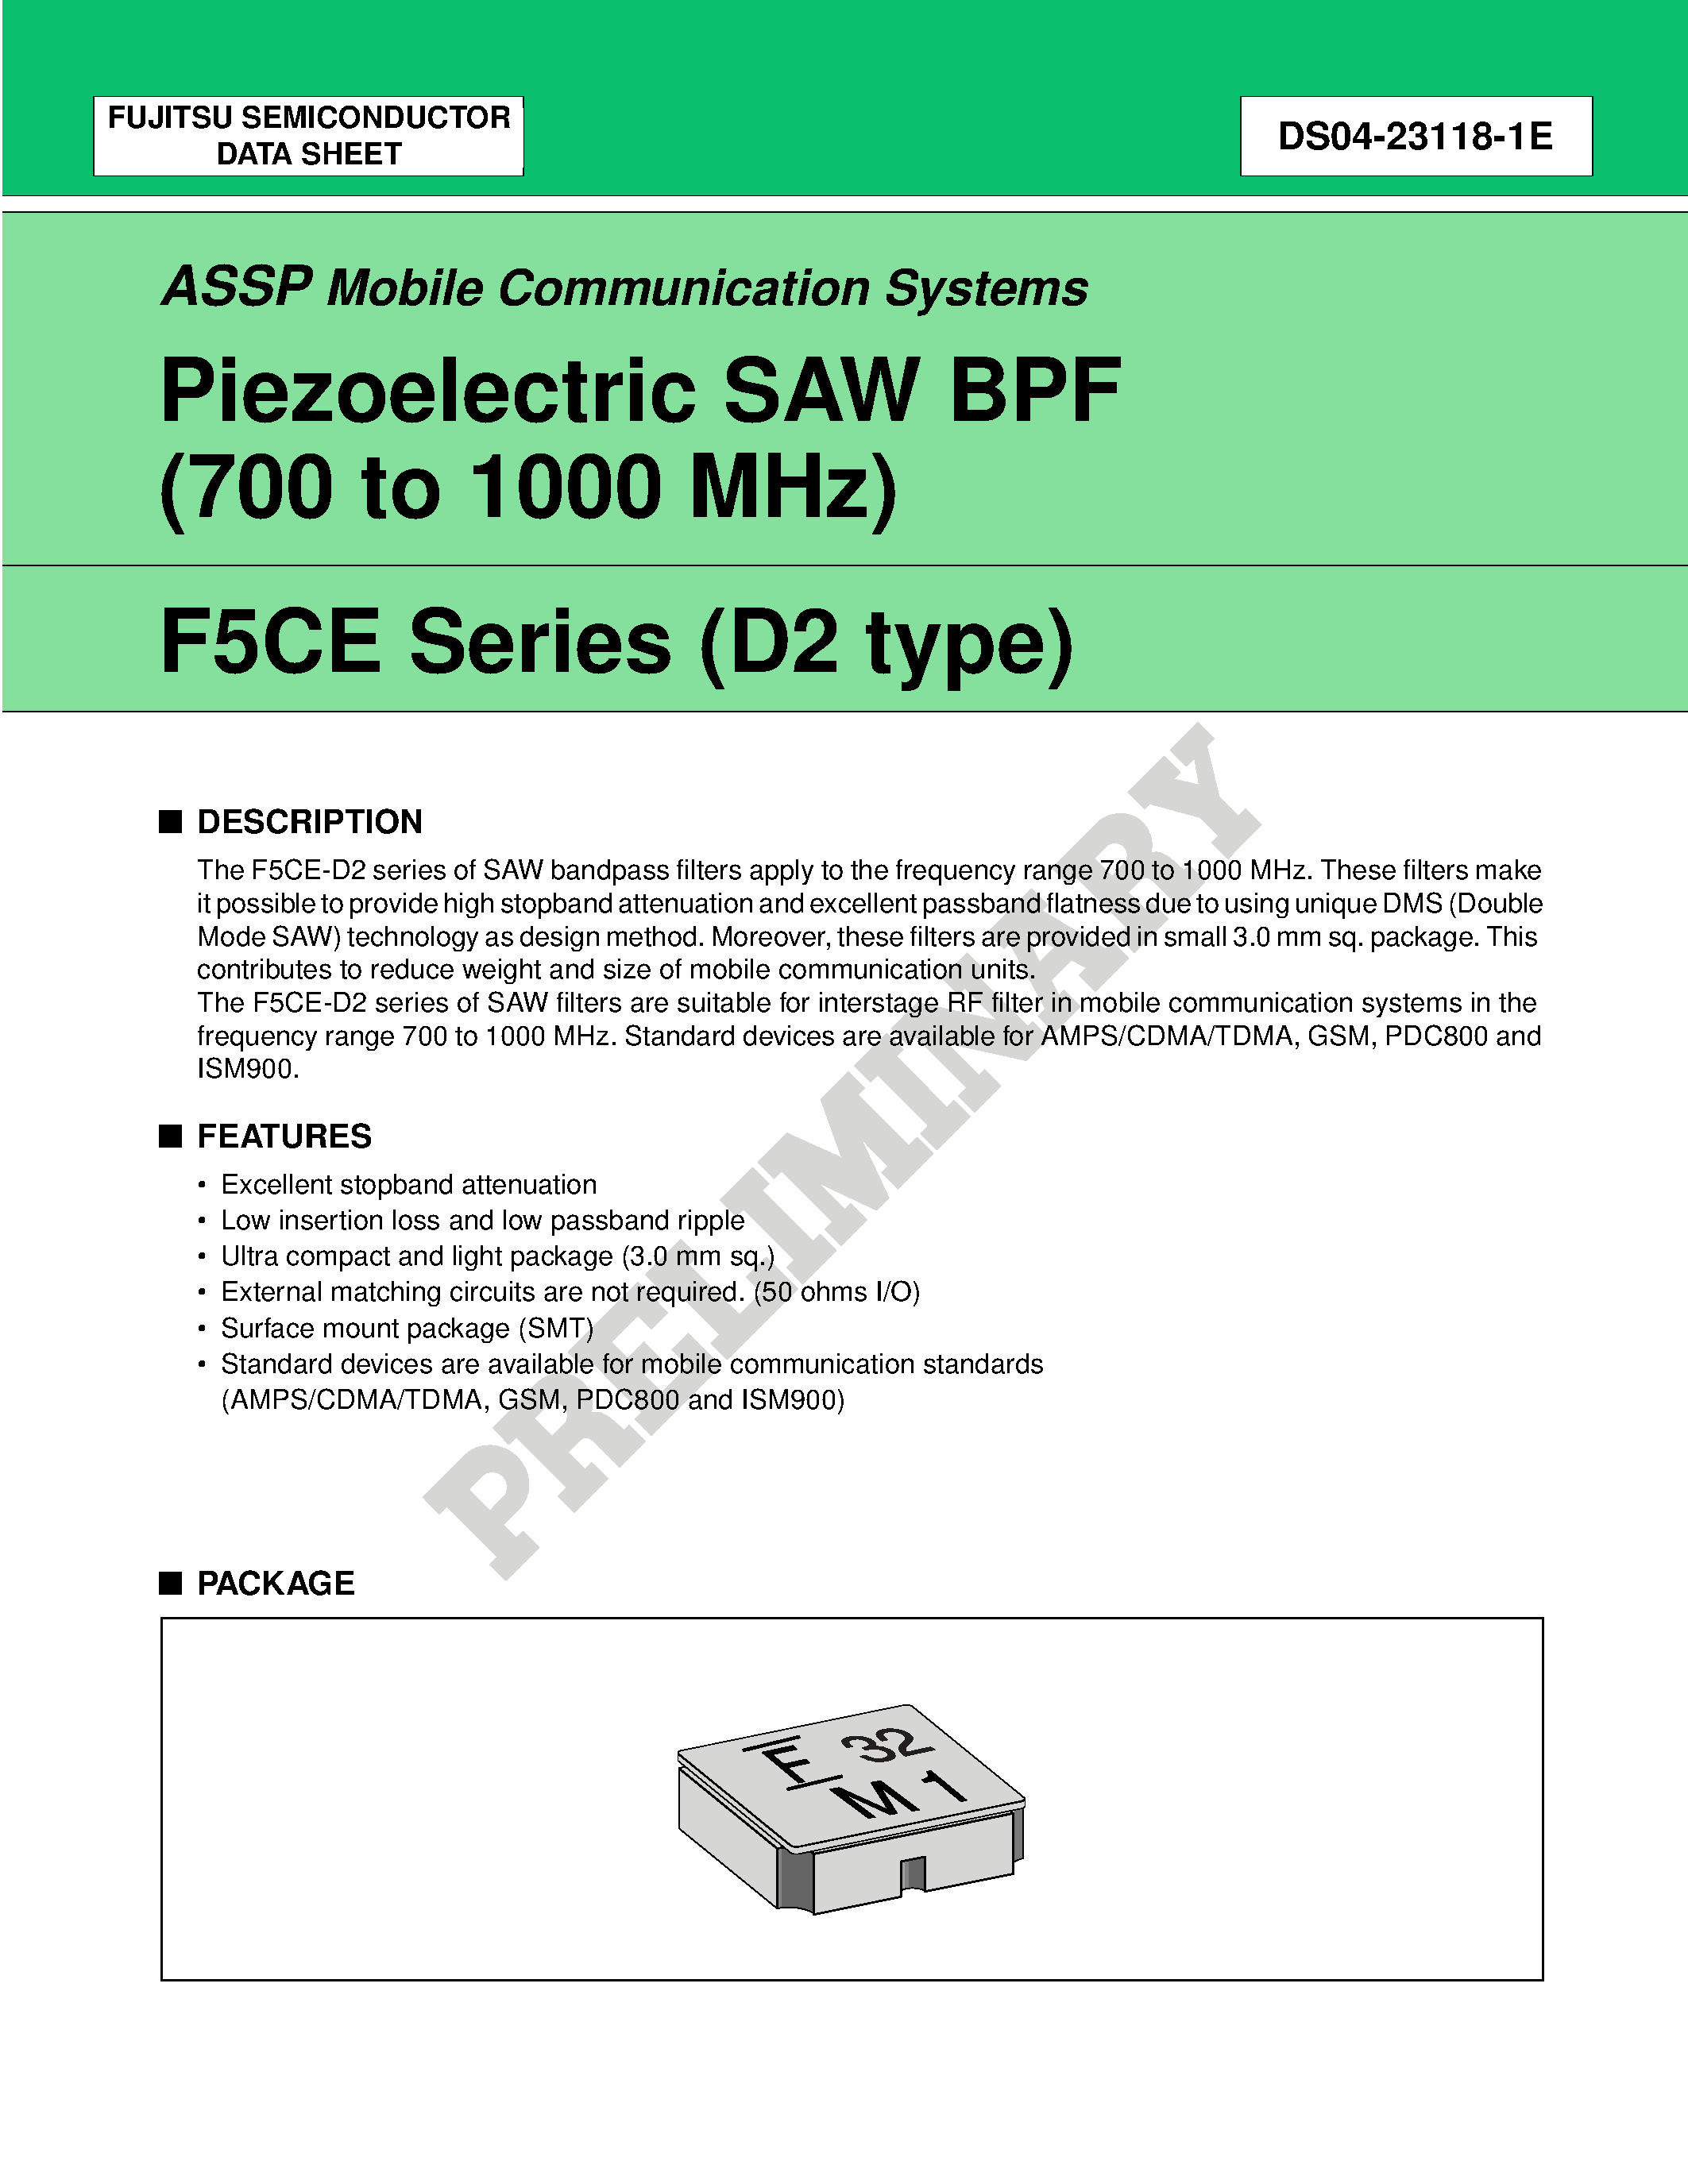 Datasheet FAR-F5CE-851M00-K212-U - Piezoelectric SAW BPF (700 to 1700 MHz) page 1